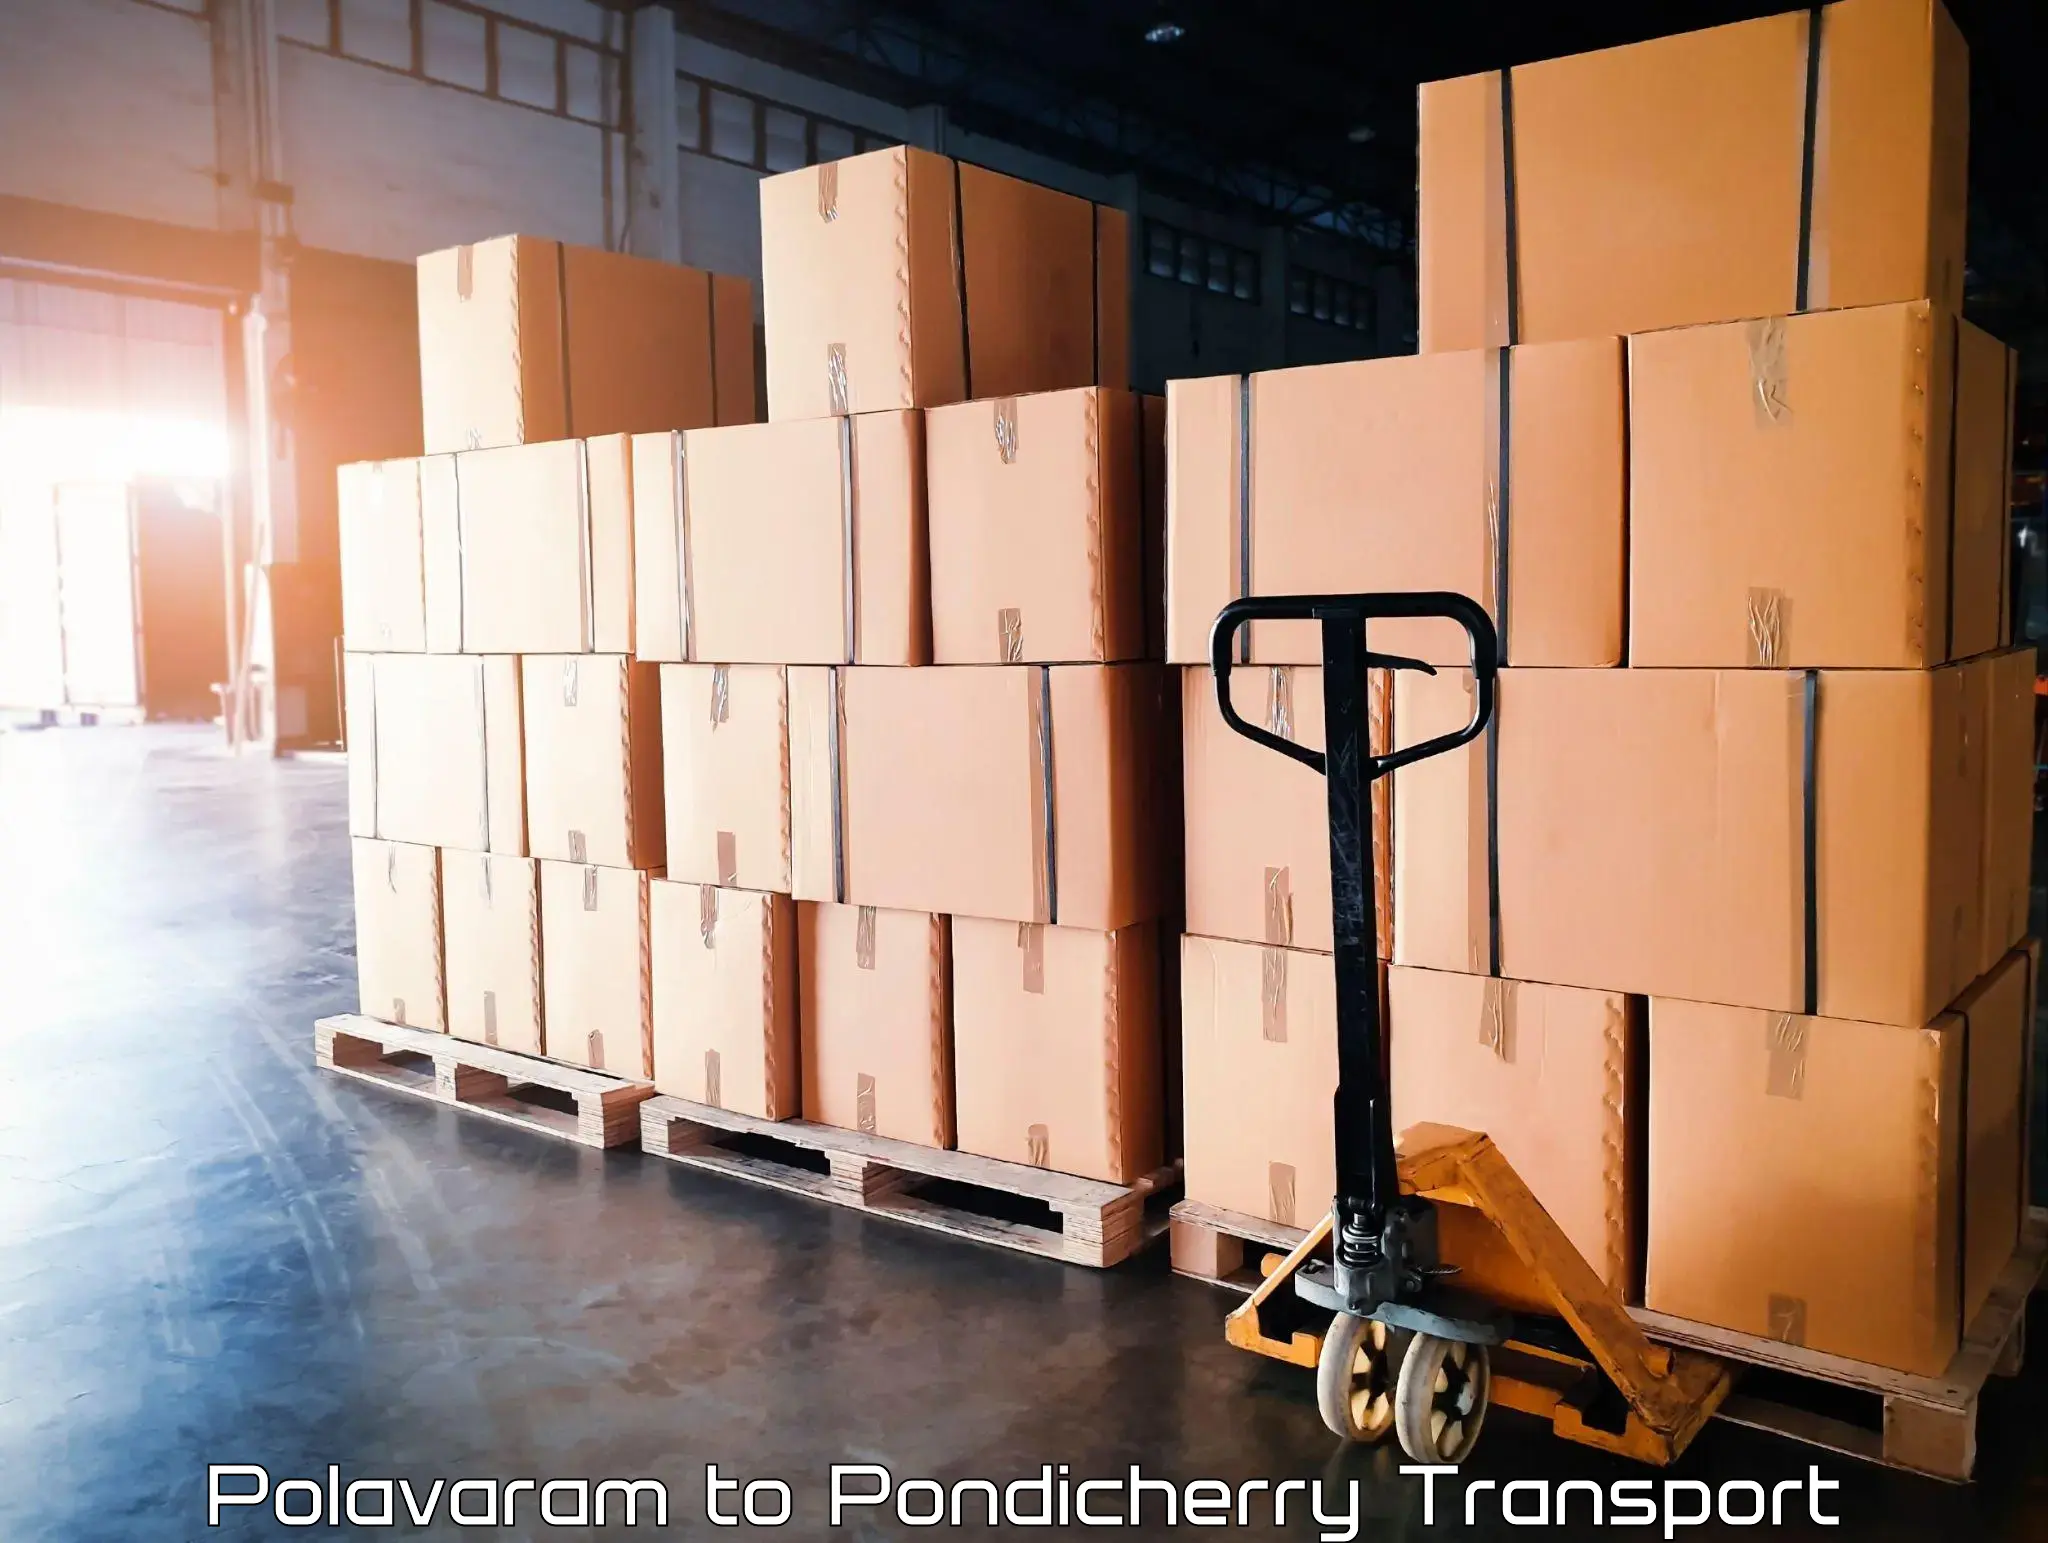 Transport in sharing Polavaram to Pondicherry